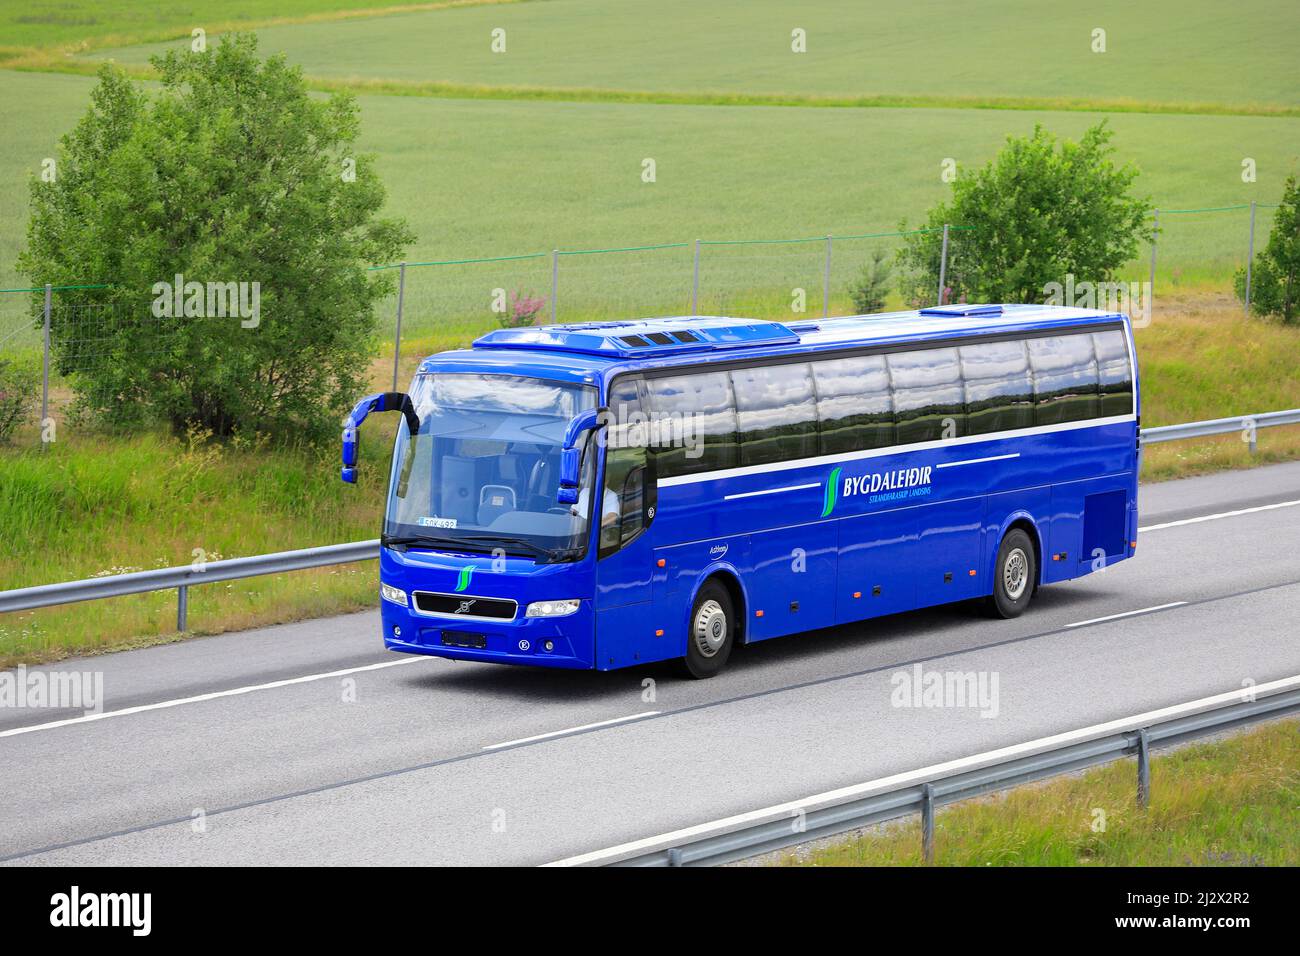 Hellblauer Volvo-Bus Bygdaleidir, Finnland-Schilder, an der finnischen Nationalstraße 1, E18, in Südfinnland. Salo, Finnland. 10. Juli 2020. Stockfoto